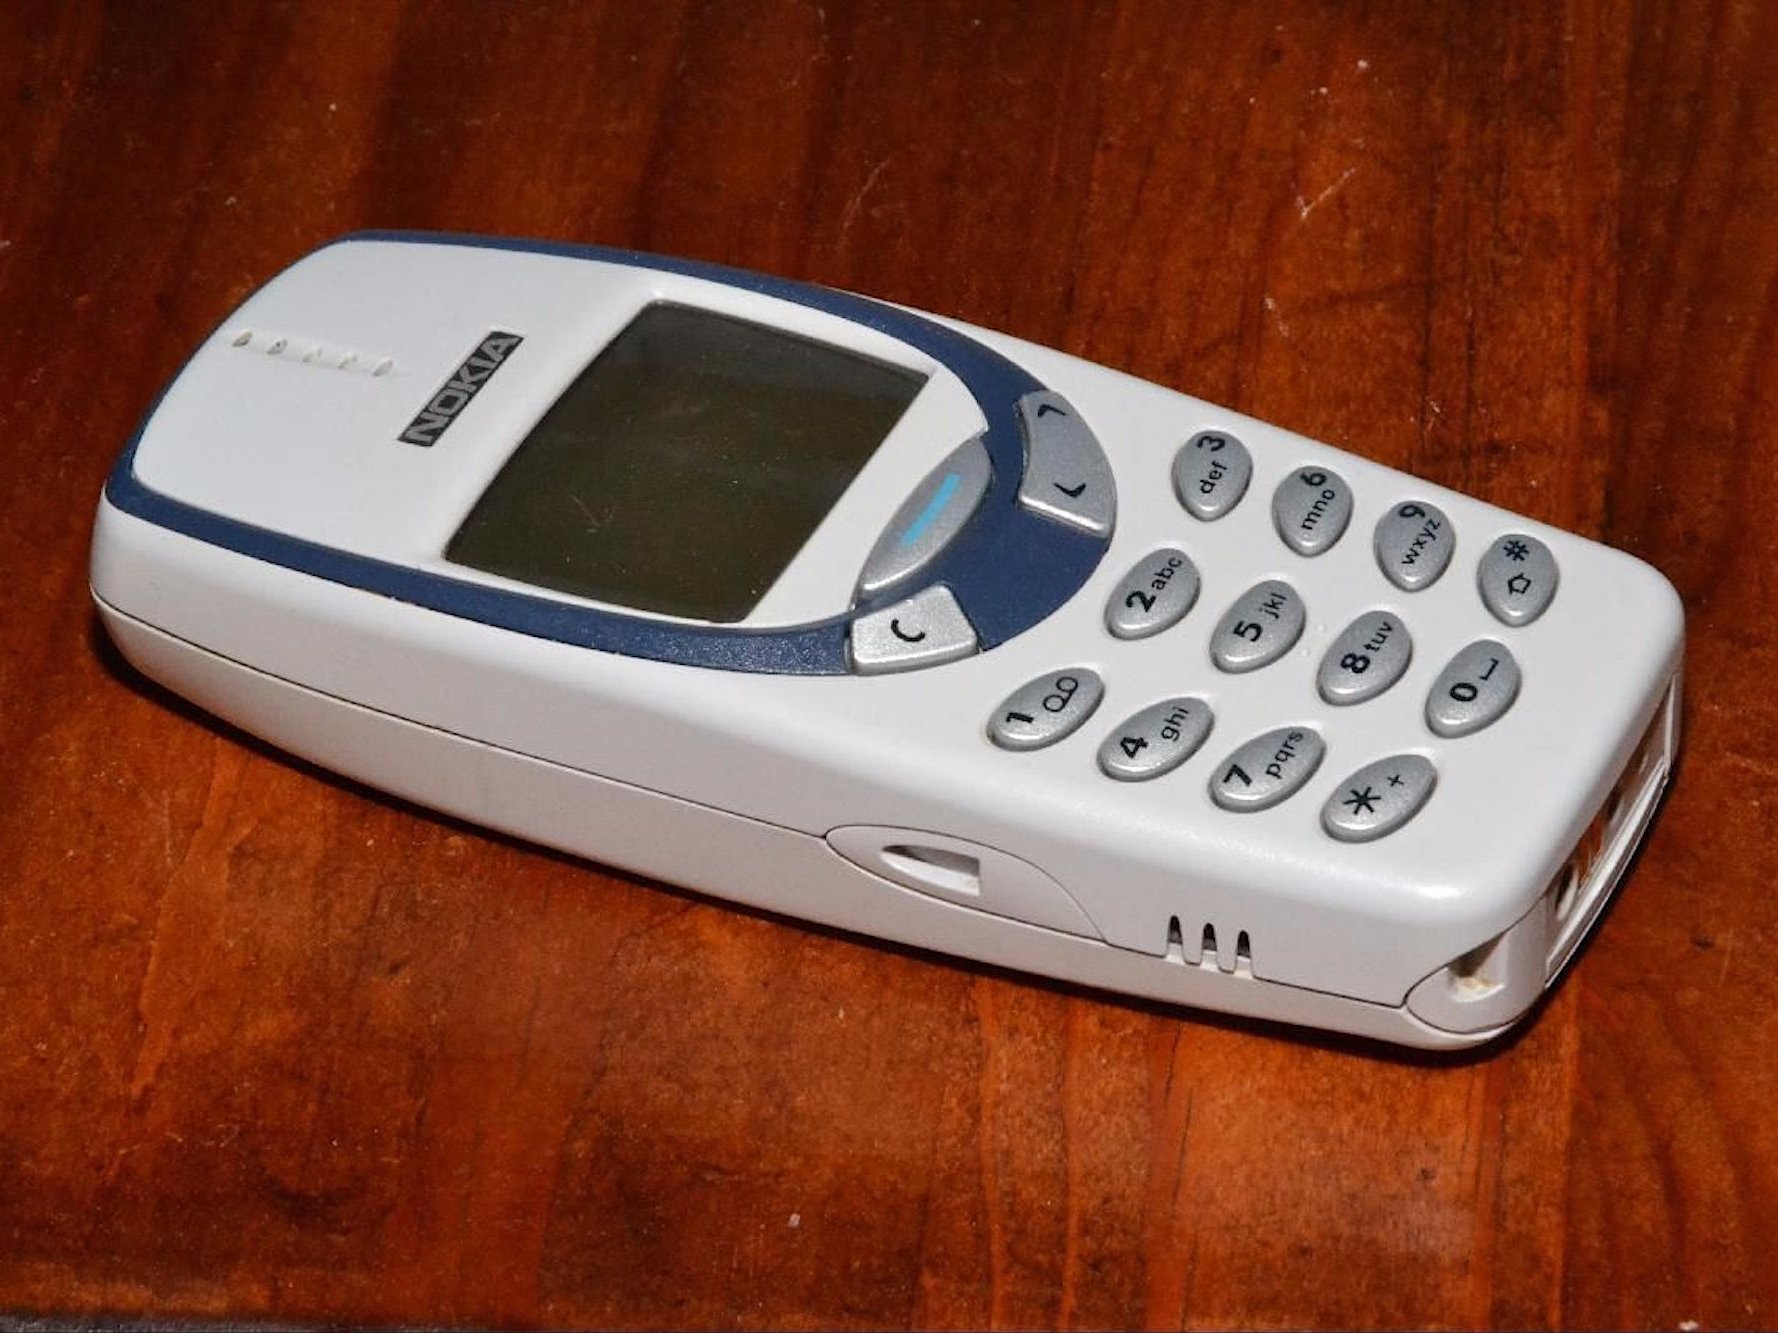 Nokia va a volver a sacar el celular con el que jugabas viborita